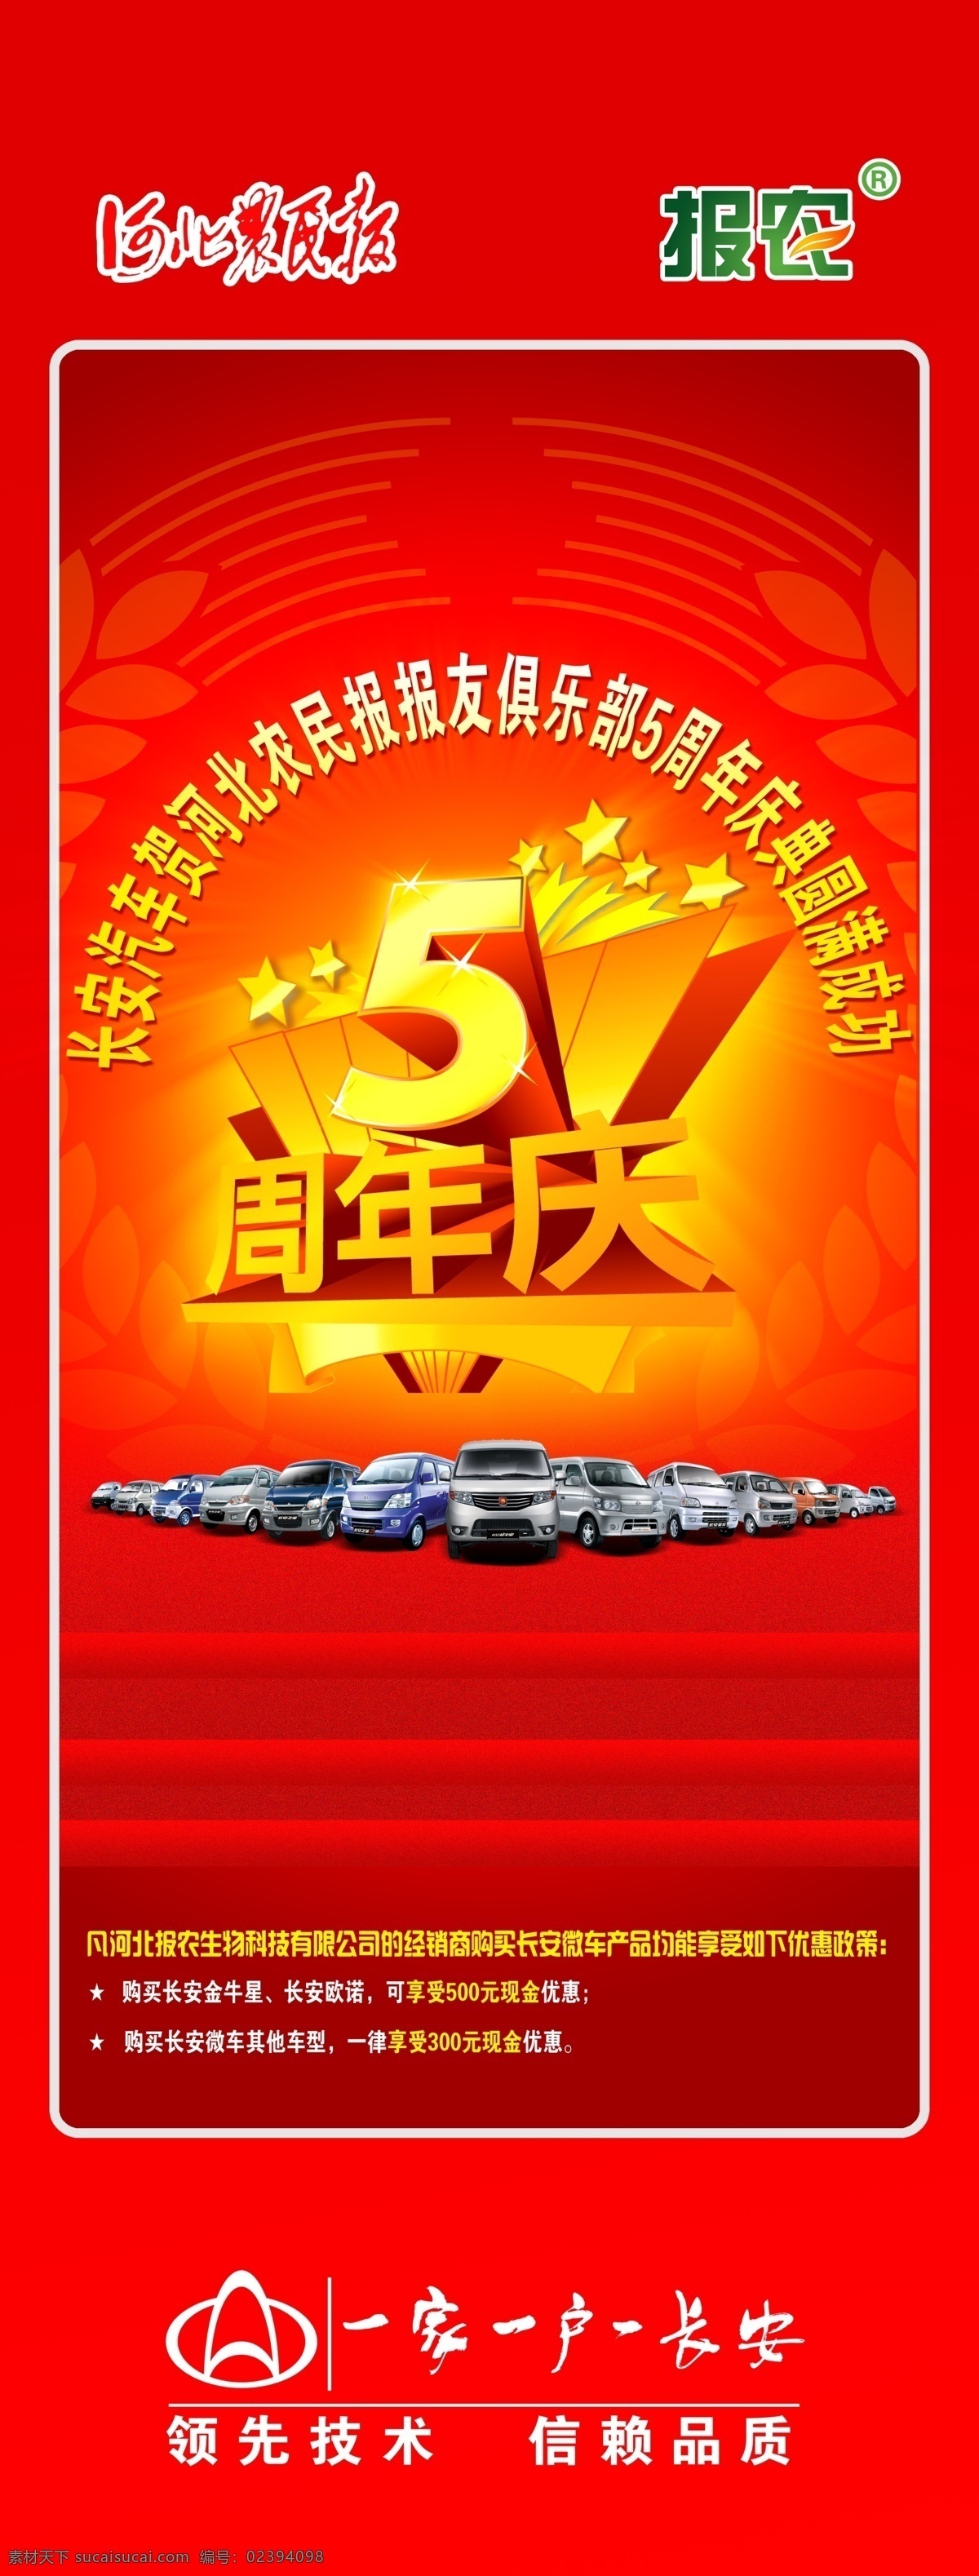 5周年 庆典 展架 周年 长安 河北农民报 汽车 原创汽车广告